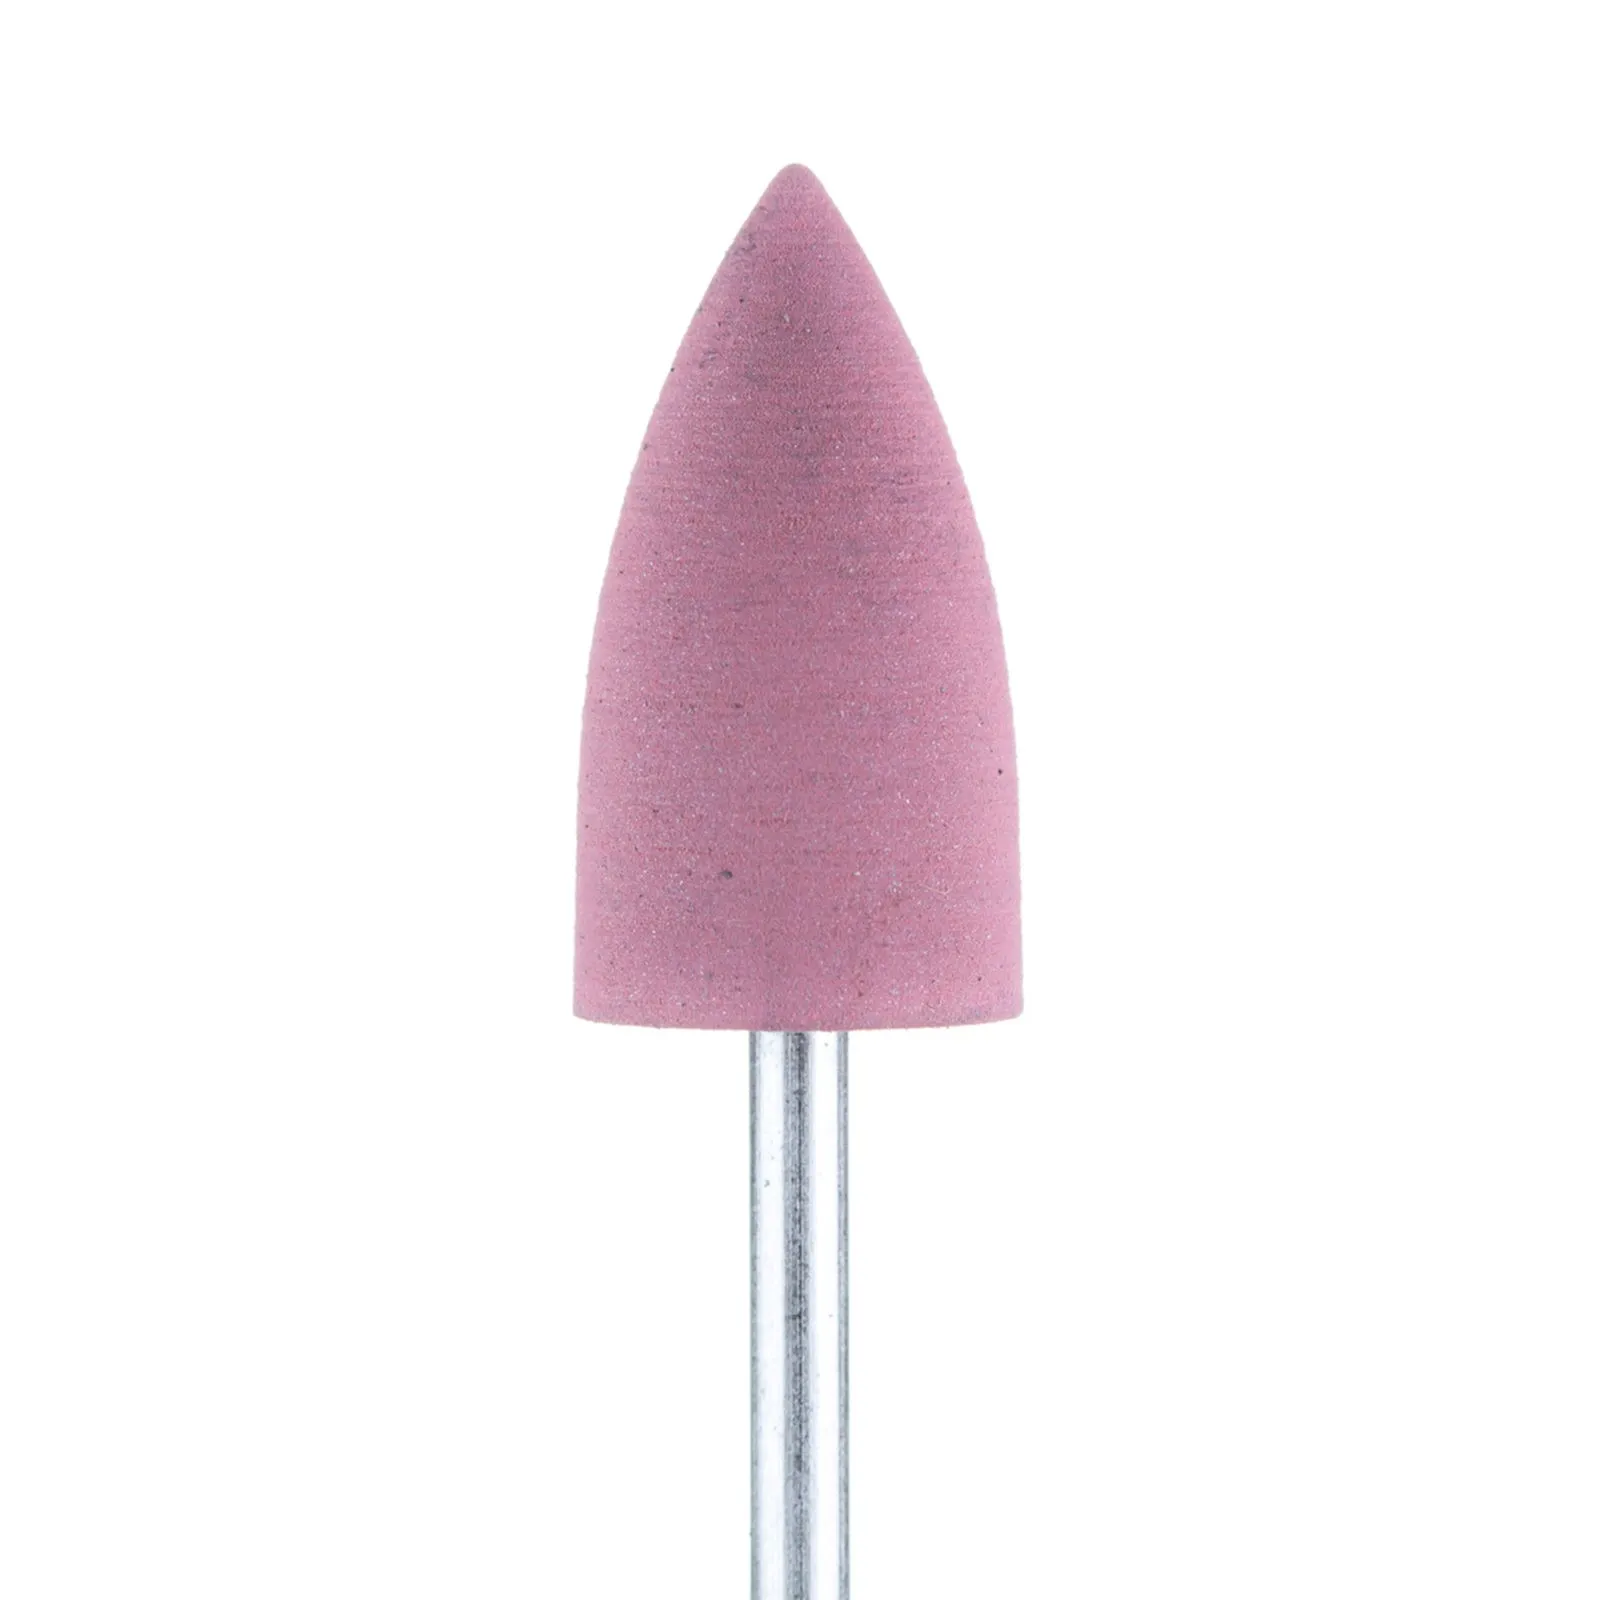 Полировщик большой острый конус розовый (диаметр 10 мм)